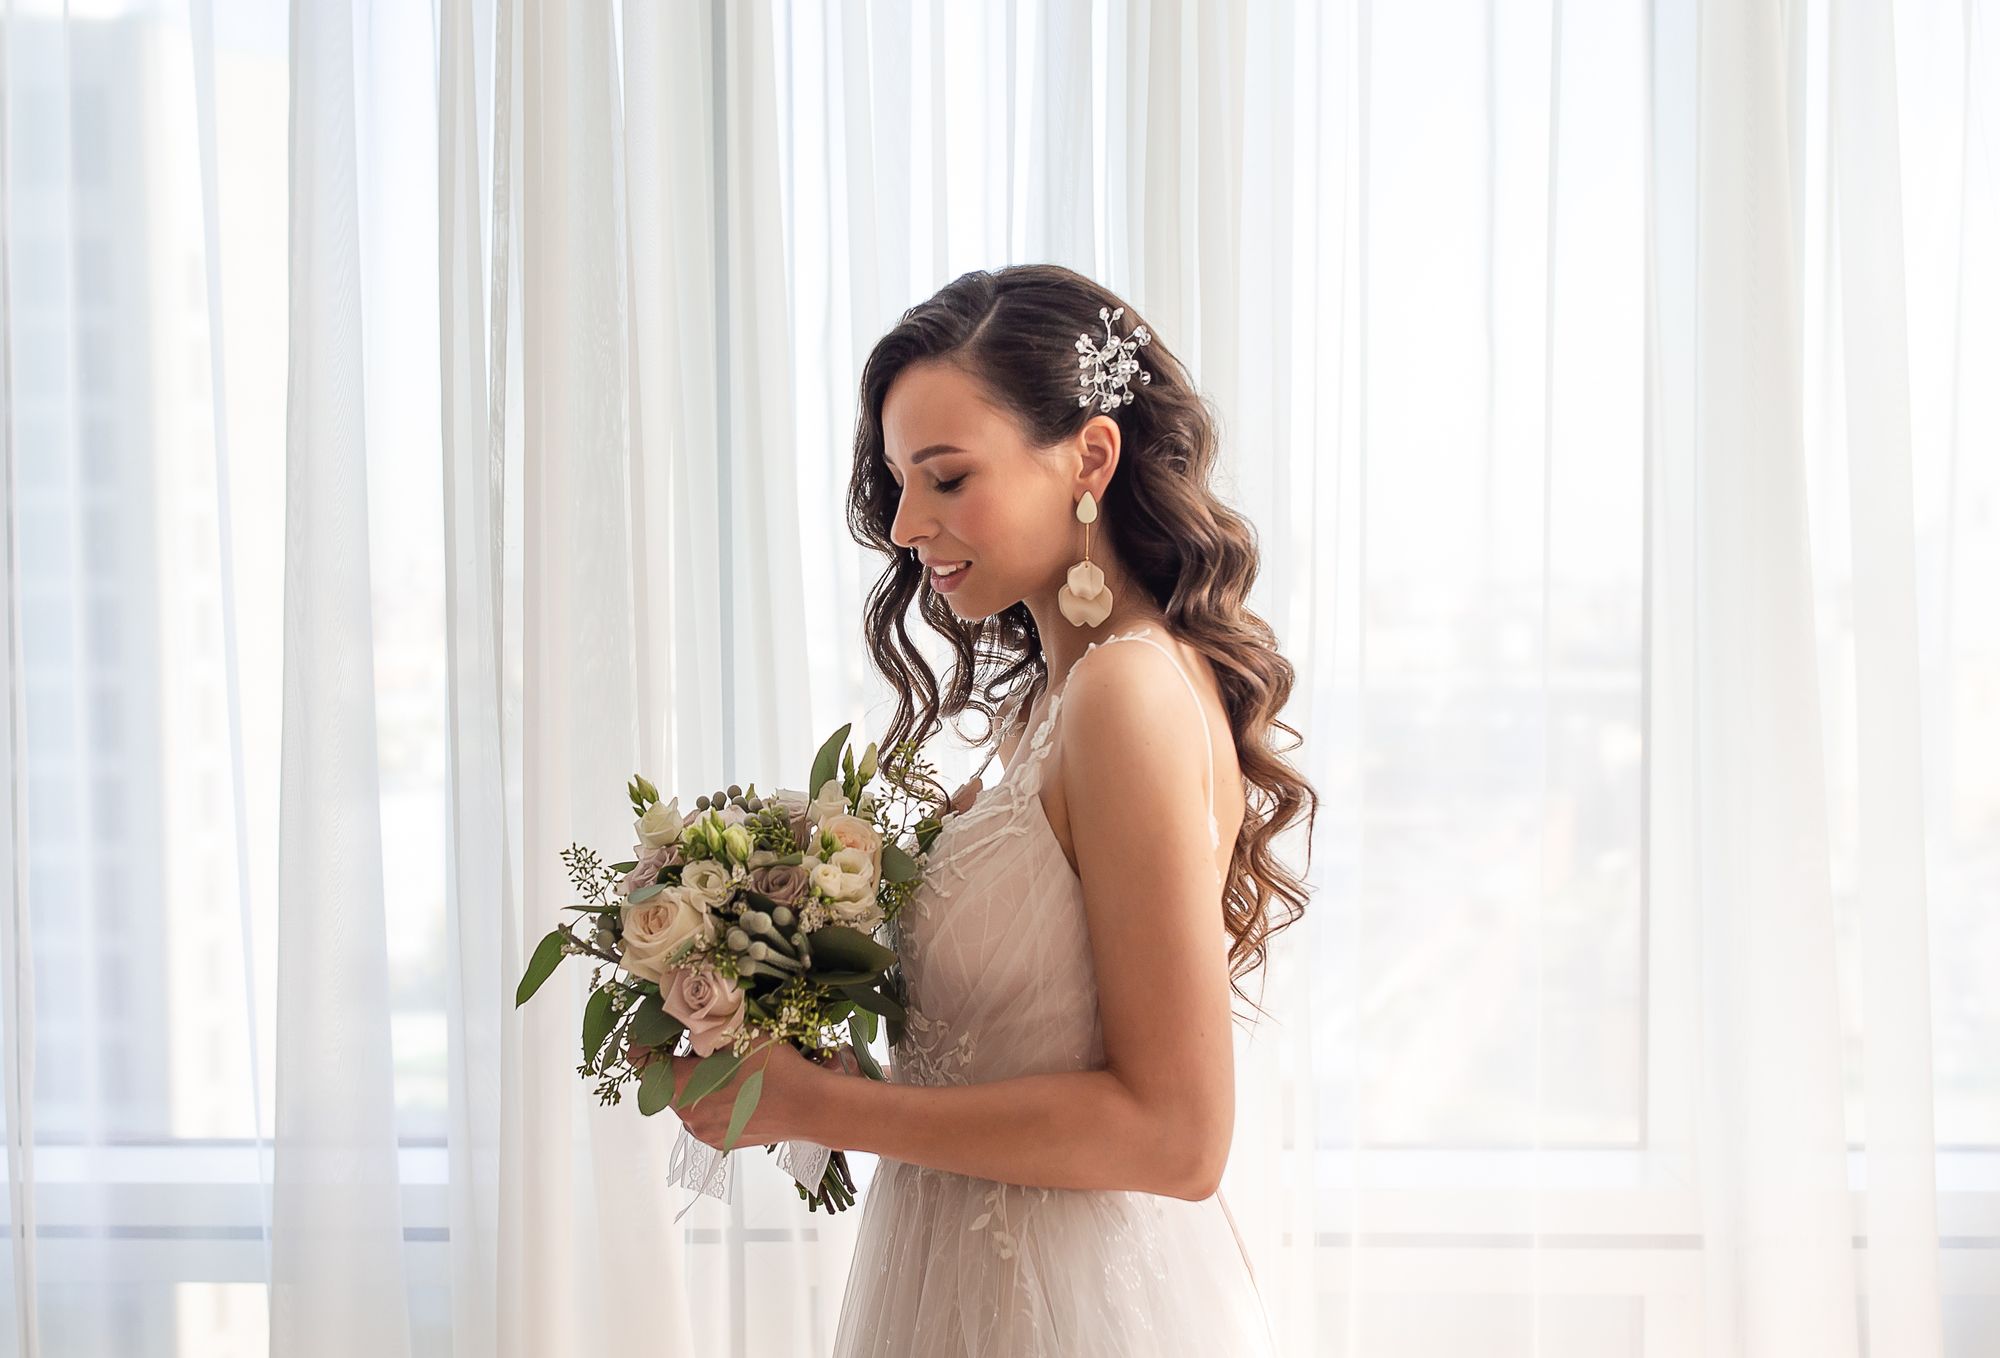 Brautfrisuren halboffen – 15 schöne Looks mit den wichtigsten Tipps